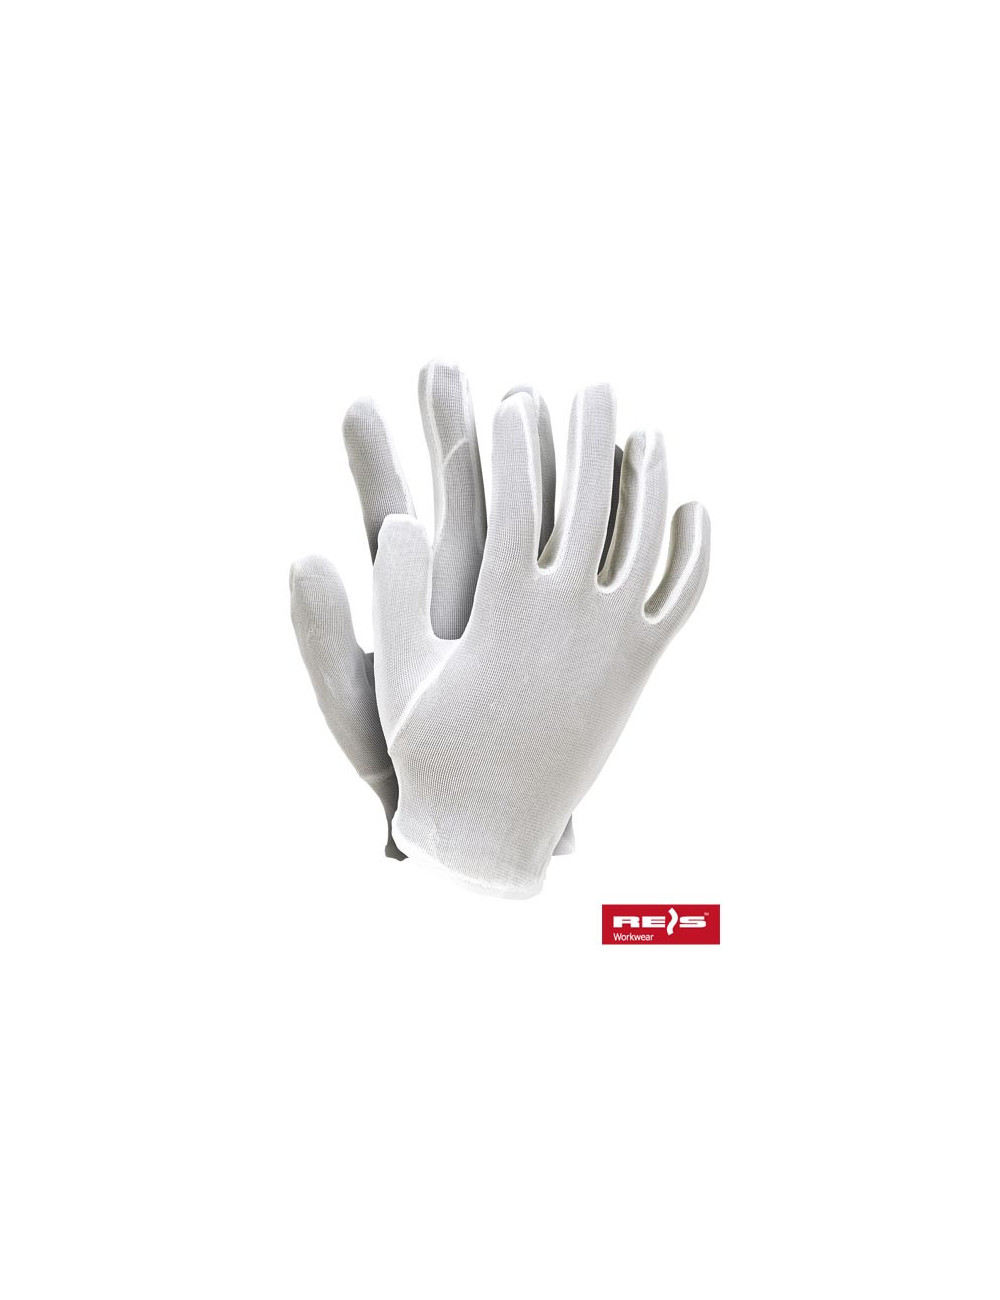 Rnylon protective gloves in white Reis